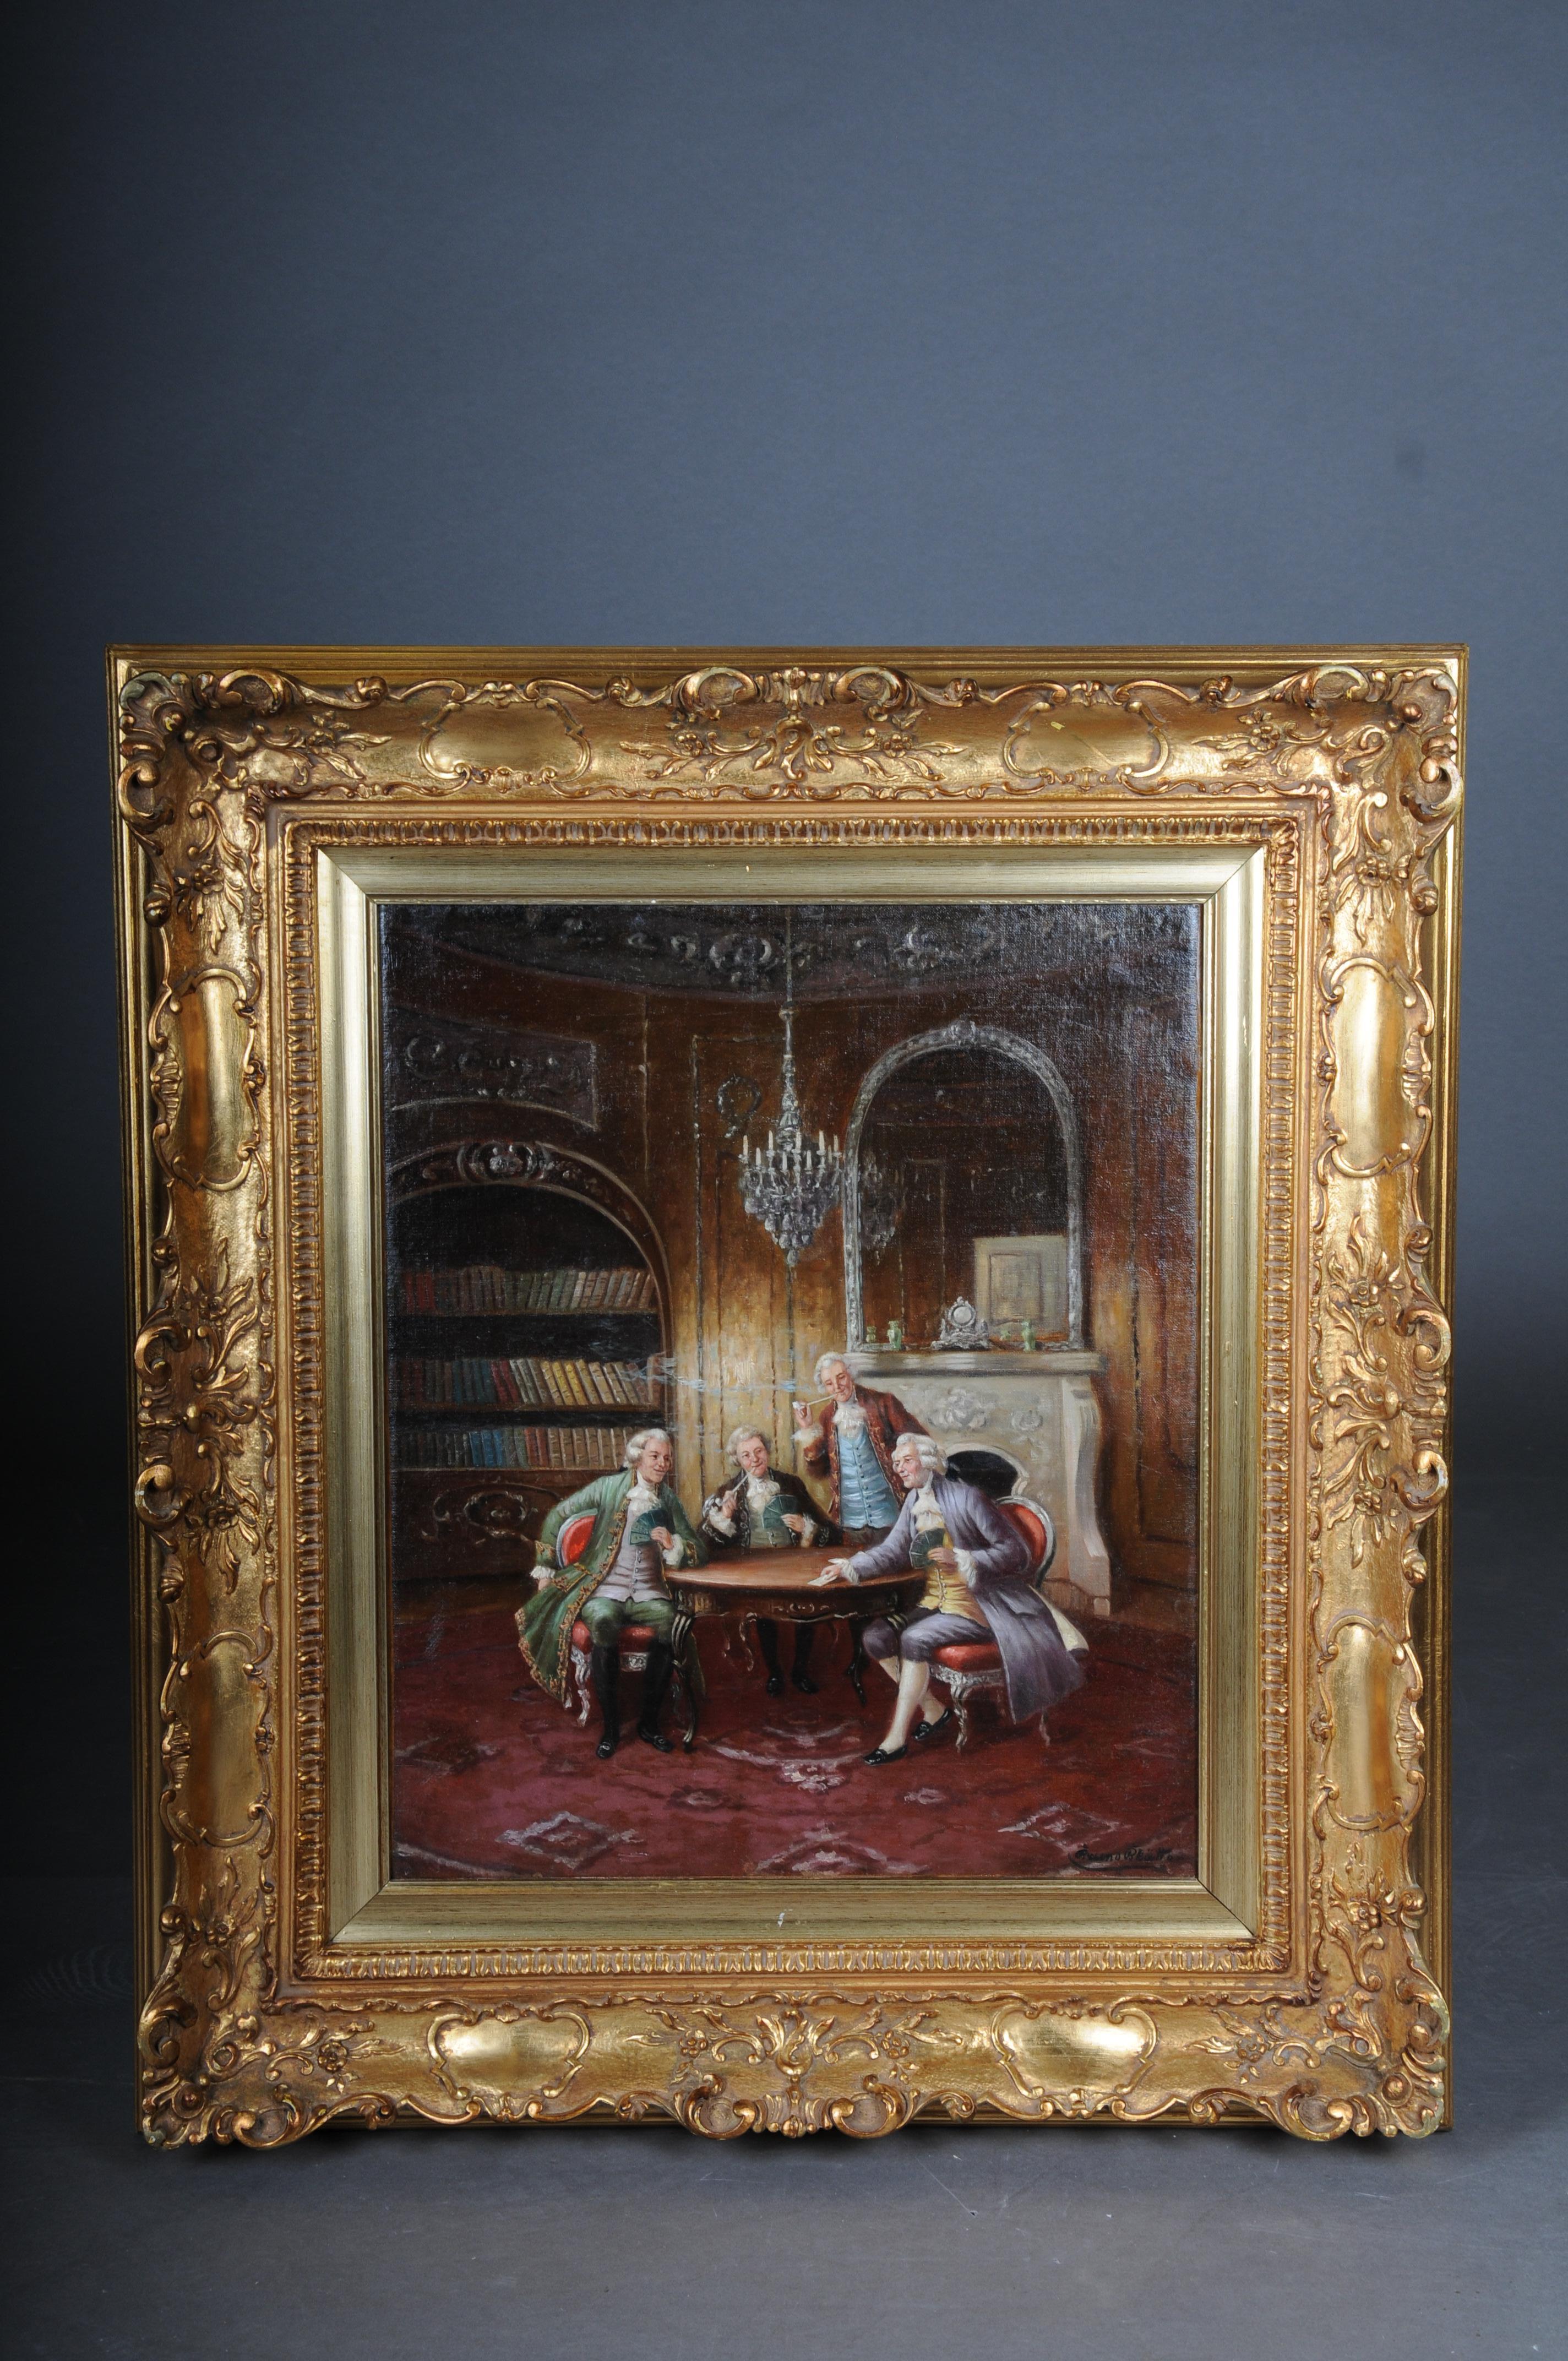 Rokoko Ölgemälde signiert Bruno Blätter um 1890

Gemälde in Öl auf Leinwand. Rokoko-Szene. Drei Herren sitzen am Tisch, spielen Karten und rauchen eine Pfeife. Vornehm gekleidete Herren mit amüsantem Gesichtsausdruck sitzen an einem Tisch in einem